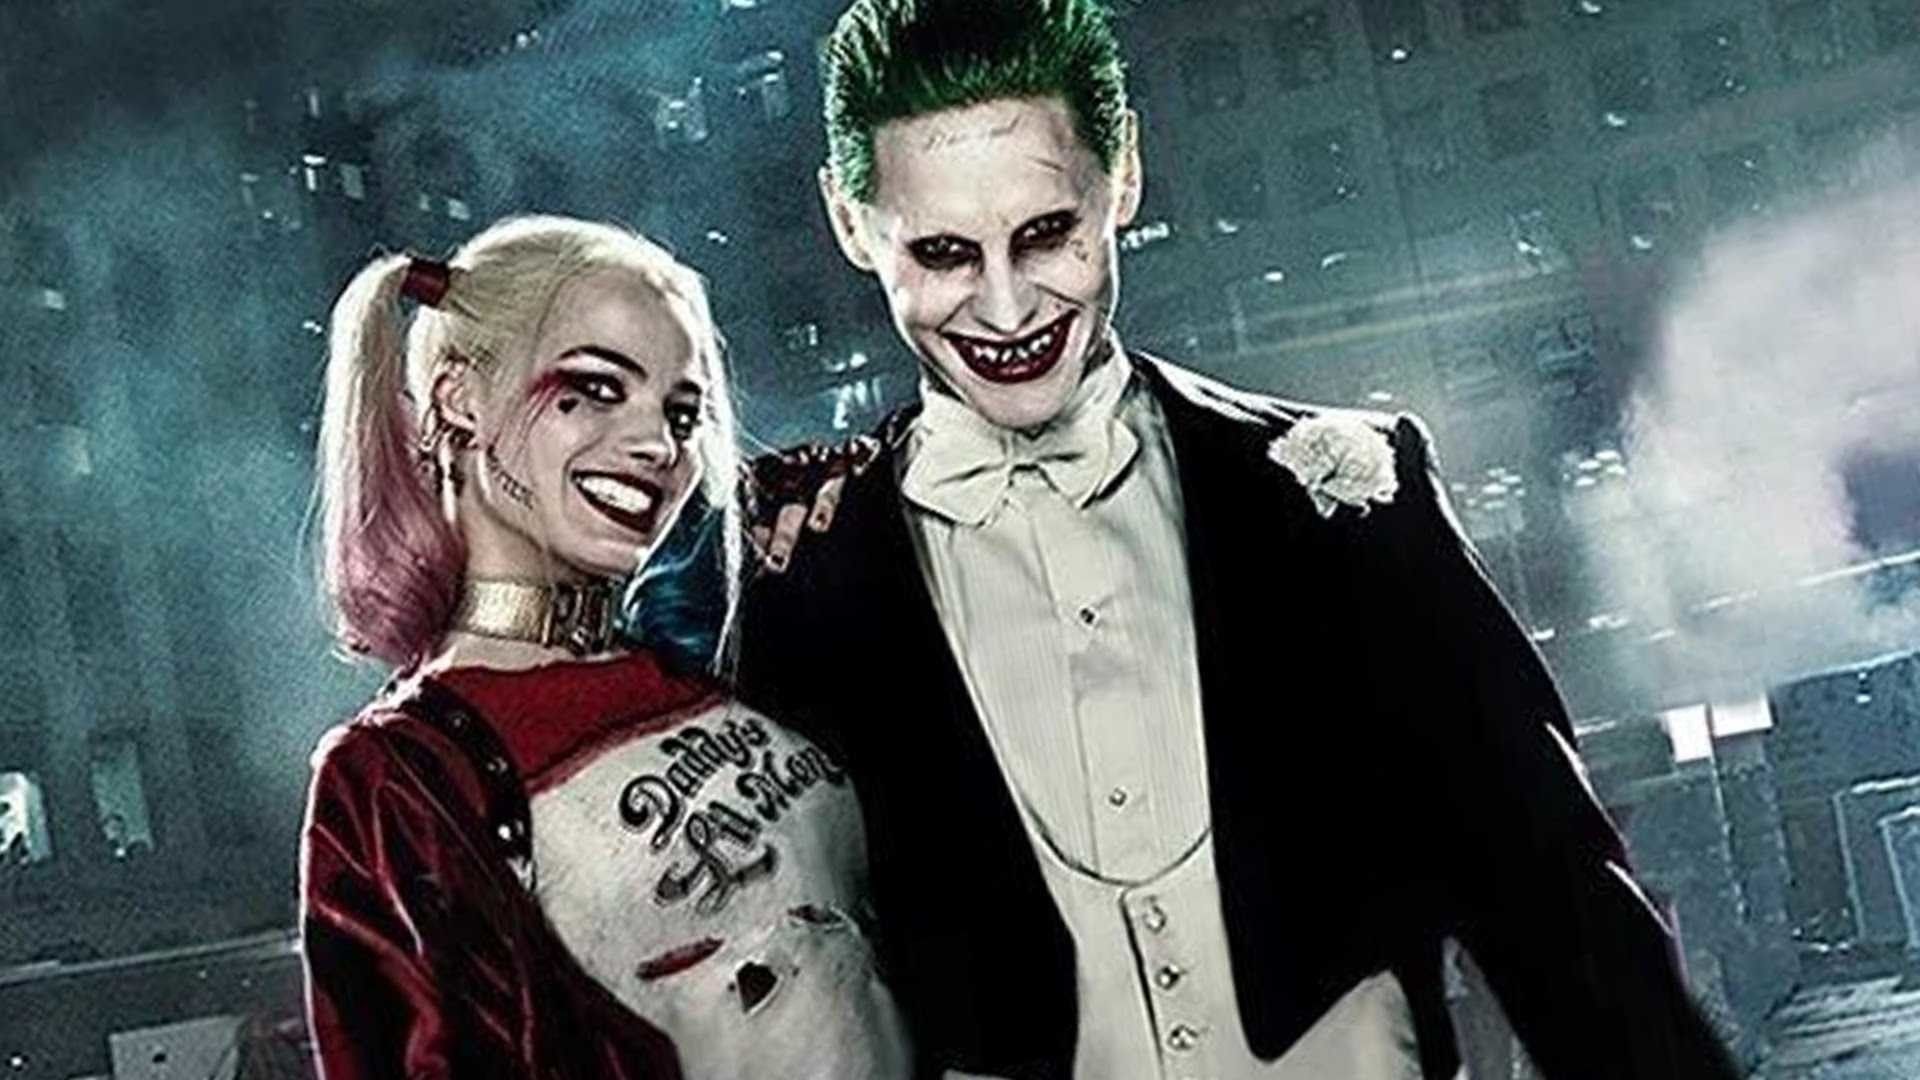 Joker And Harley Quinn Wallpaper